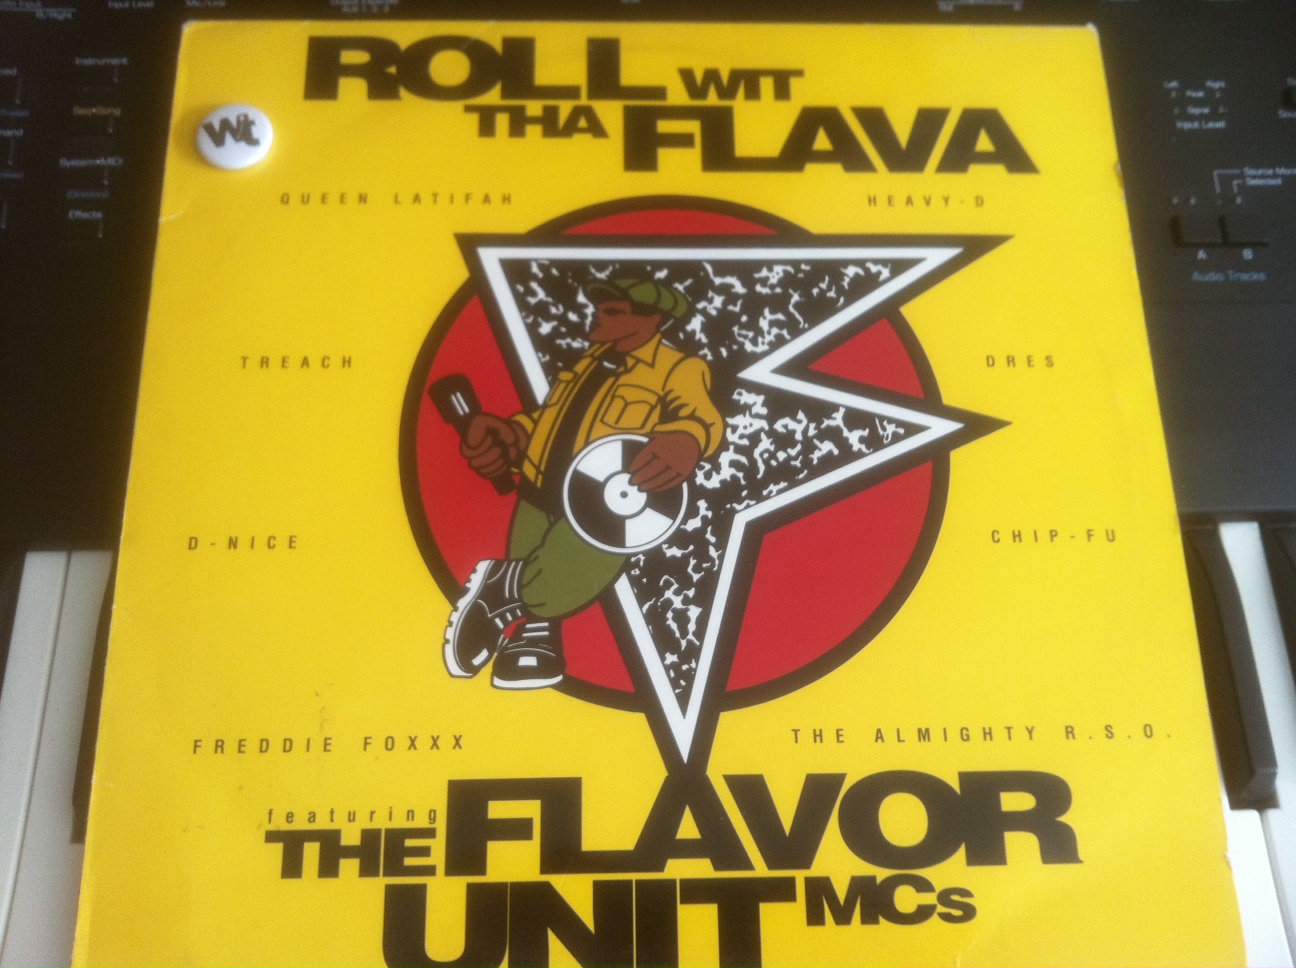 डाउनलोड करा Flavor Unit MC's - Roll With Tha Flava (Extended)